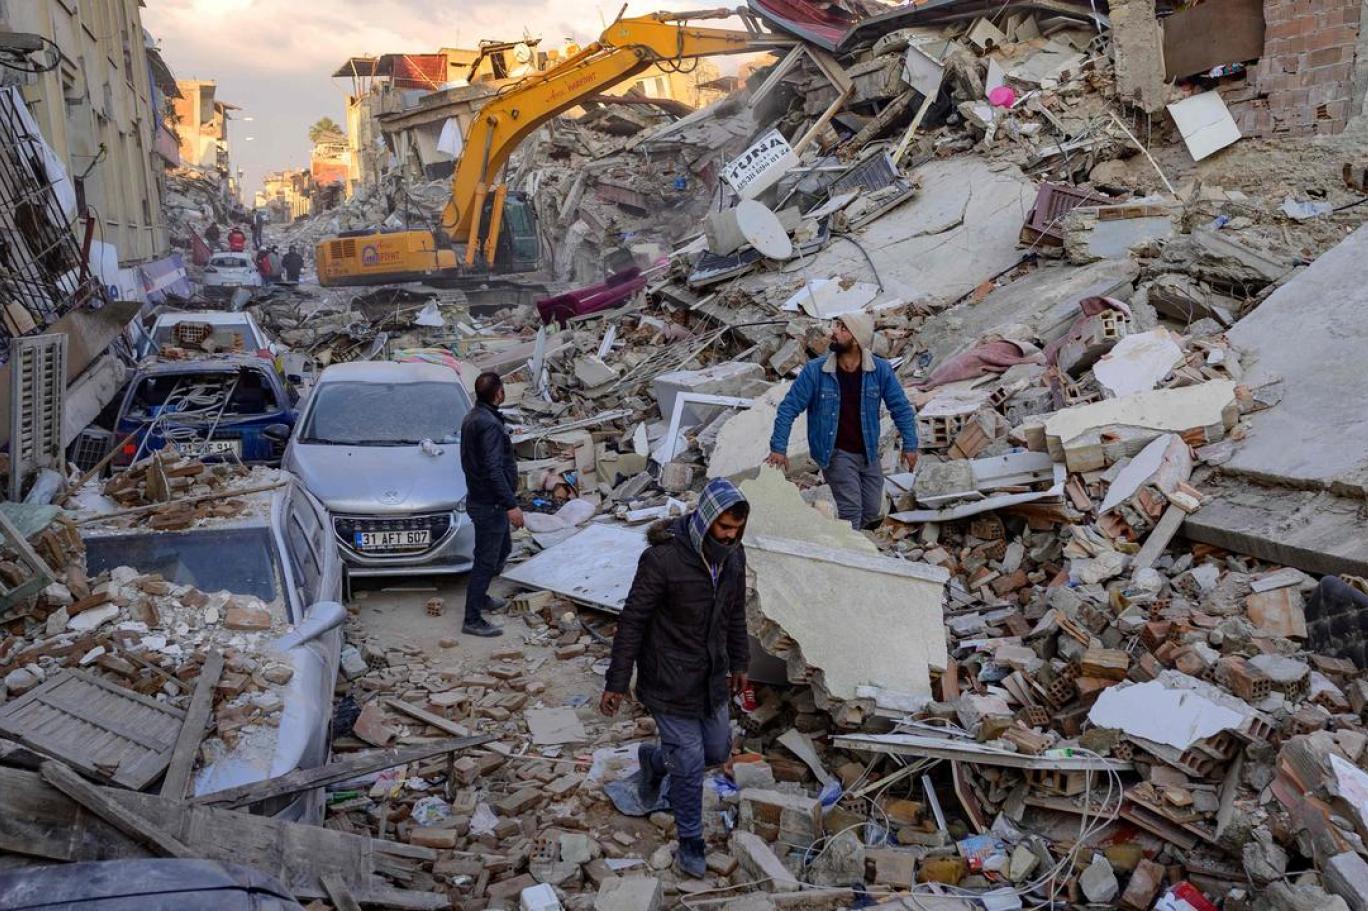 Depremzedeler kayıplarını arıyor: "Sevdiklerimizin ne dirisini ne ölüsünü alabildik" | Independent Türkçe